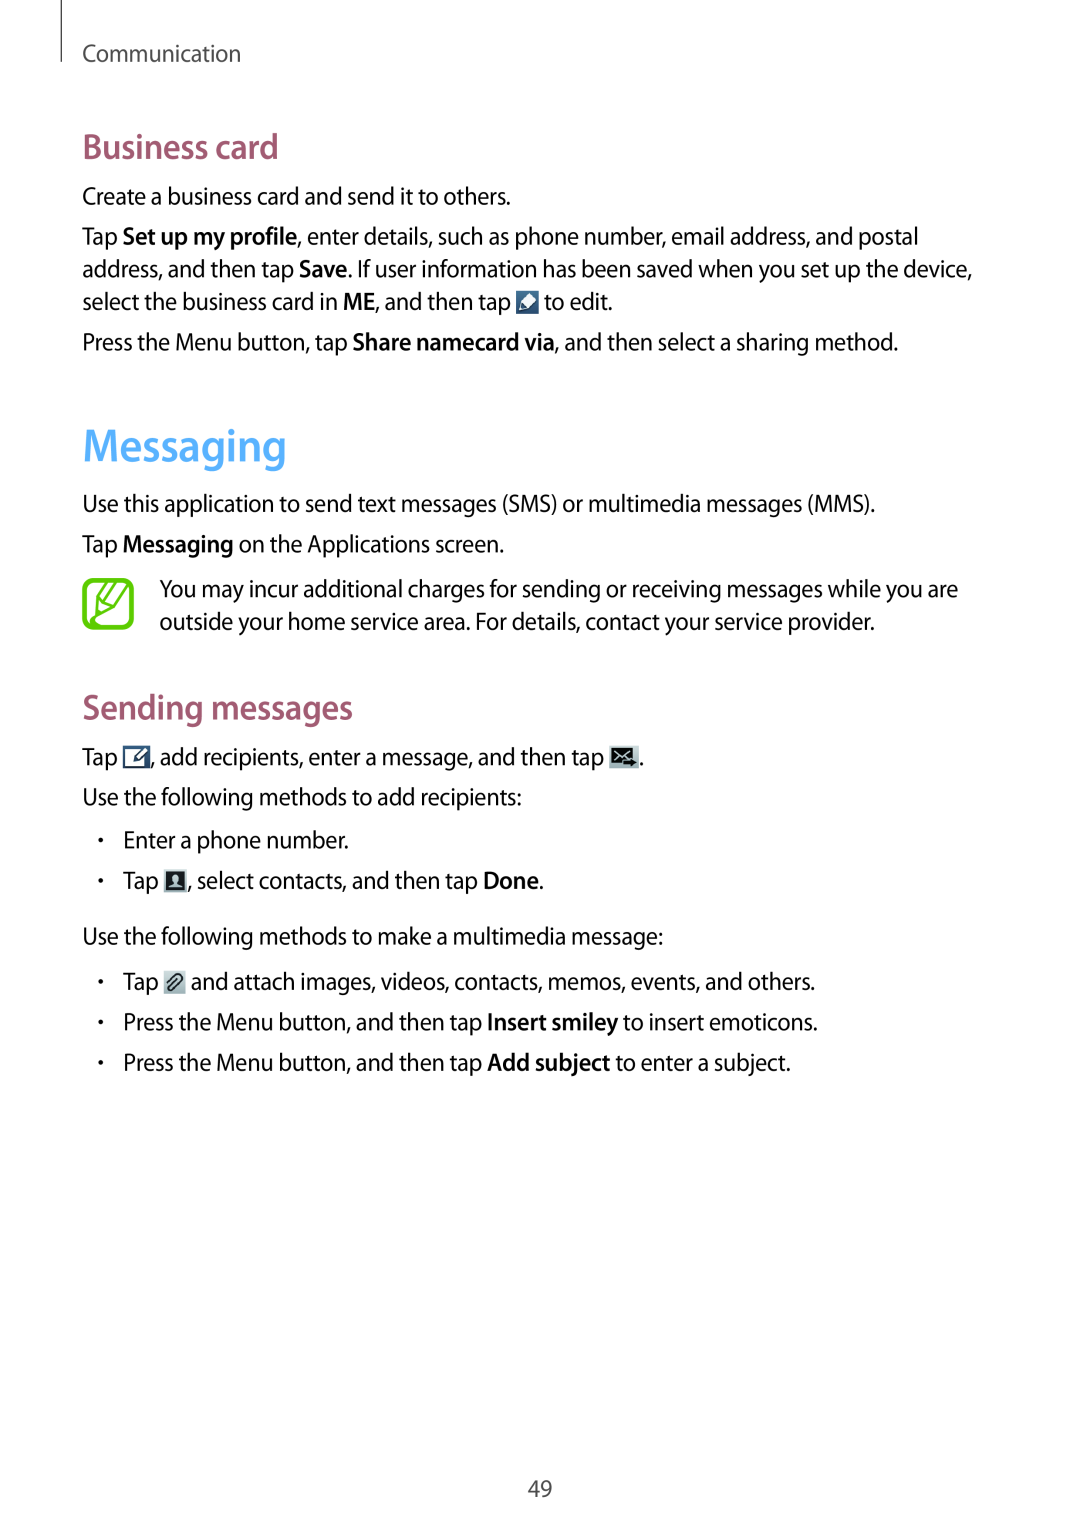 Samsung GT-S7710TAACOA, GT-S7710KRADBT, GT2S7710TAADBT manual Messaging, Business card, Sending messages, Communication 